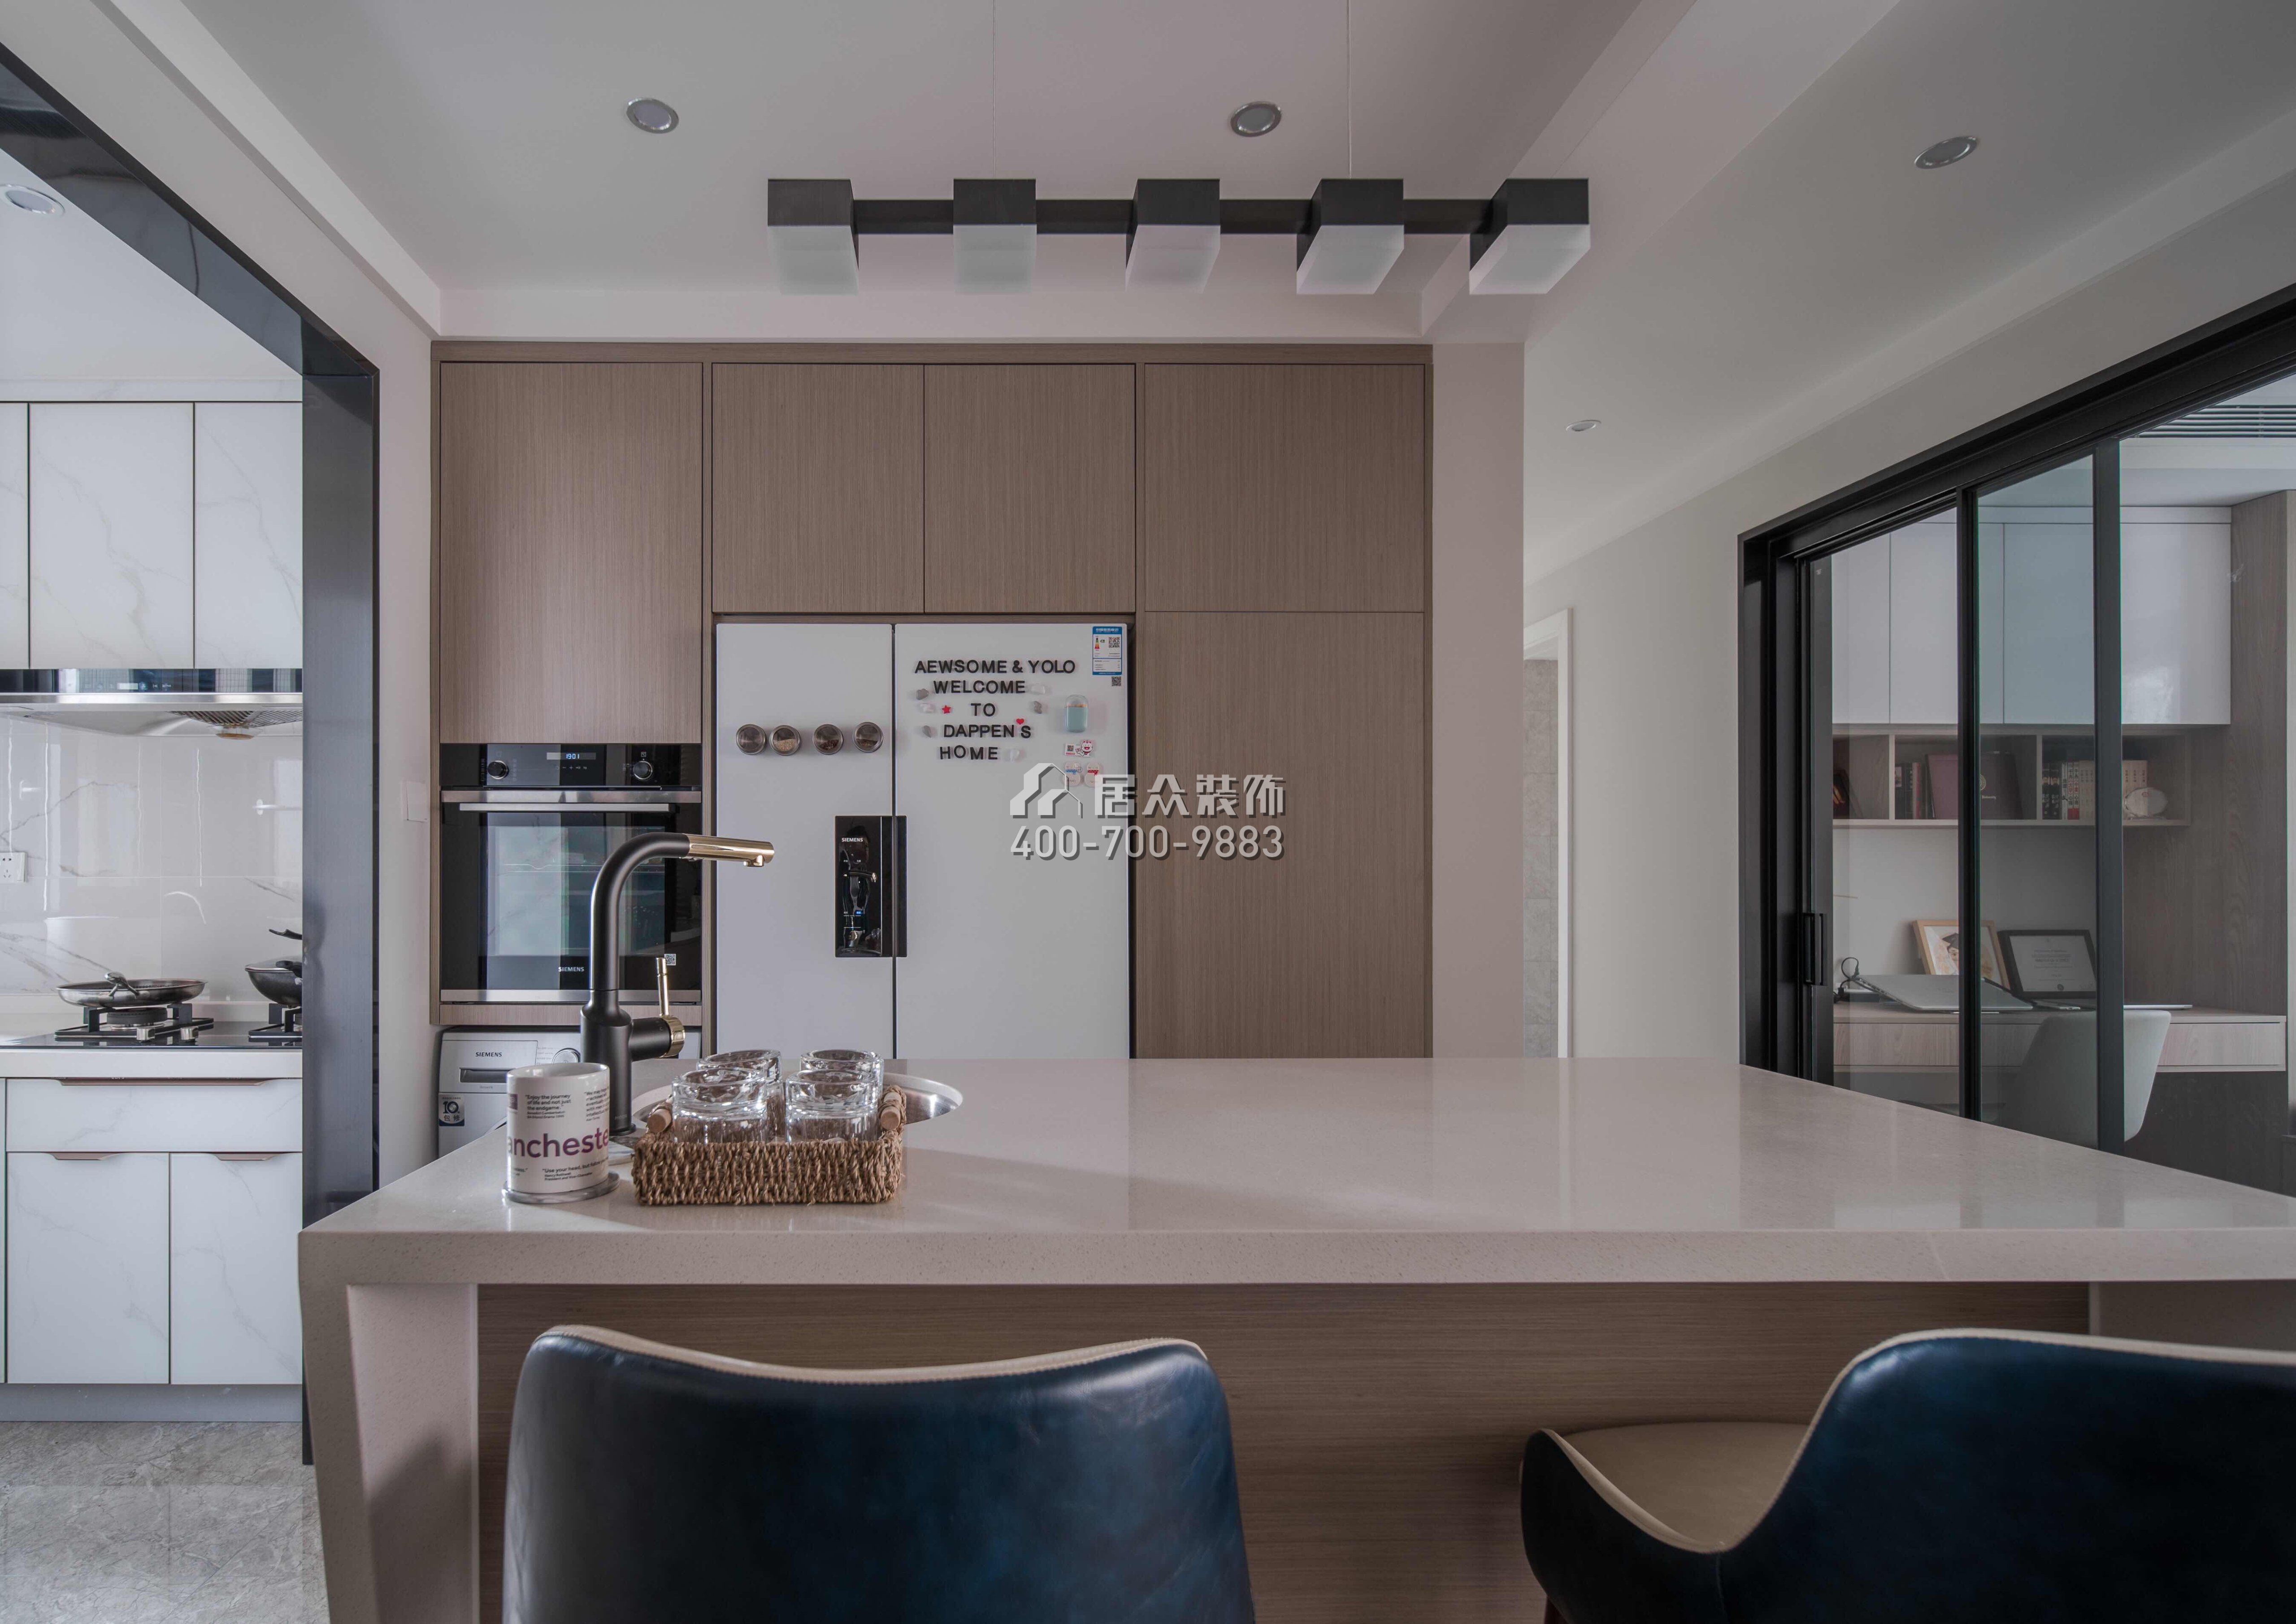 銀湖藍山潤園二期110平方米現代簡約風格平層戶型廚房裝修效果圖